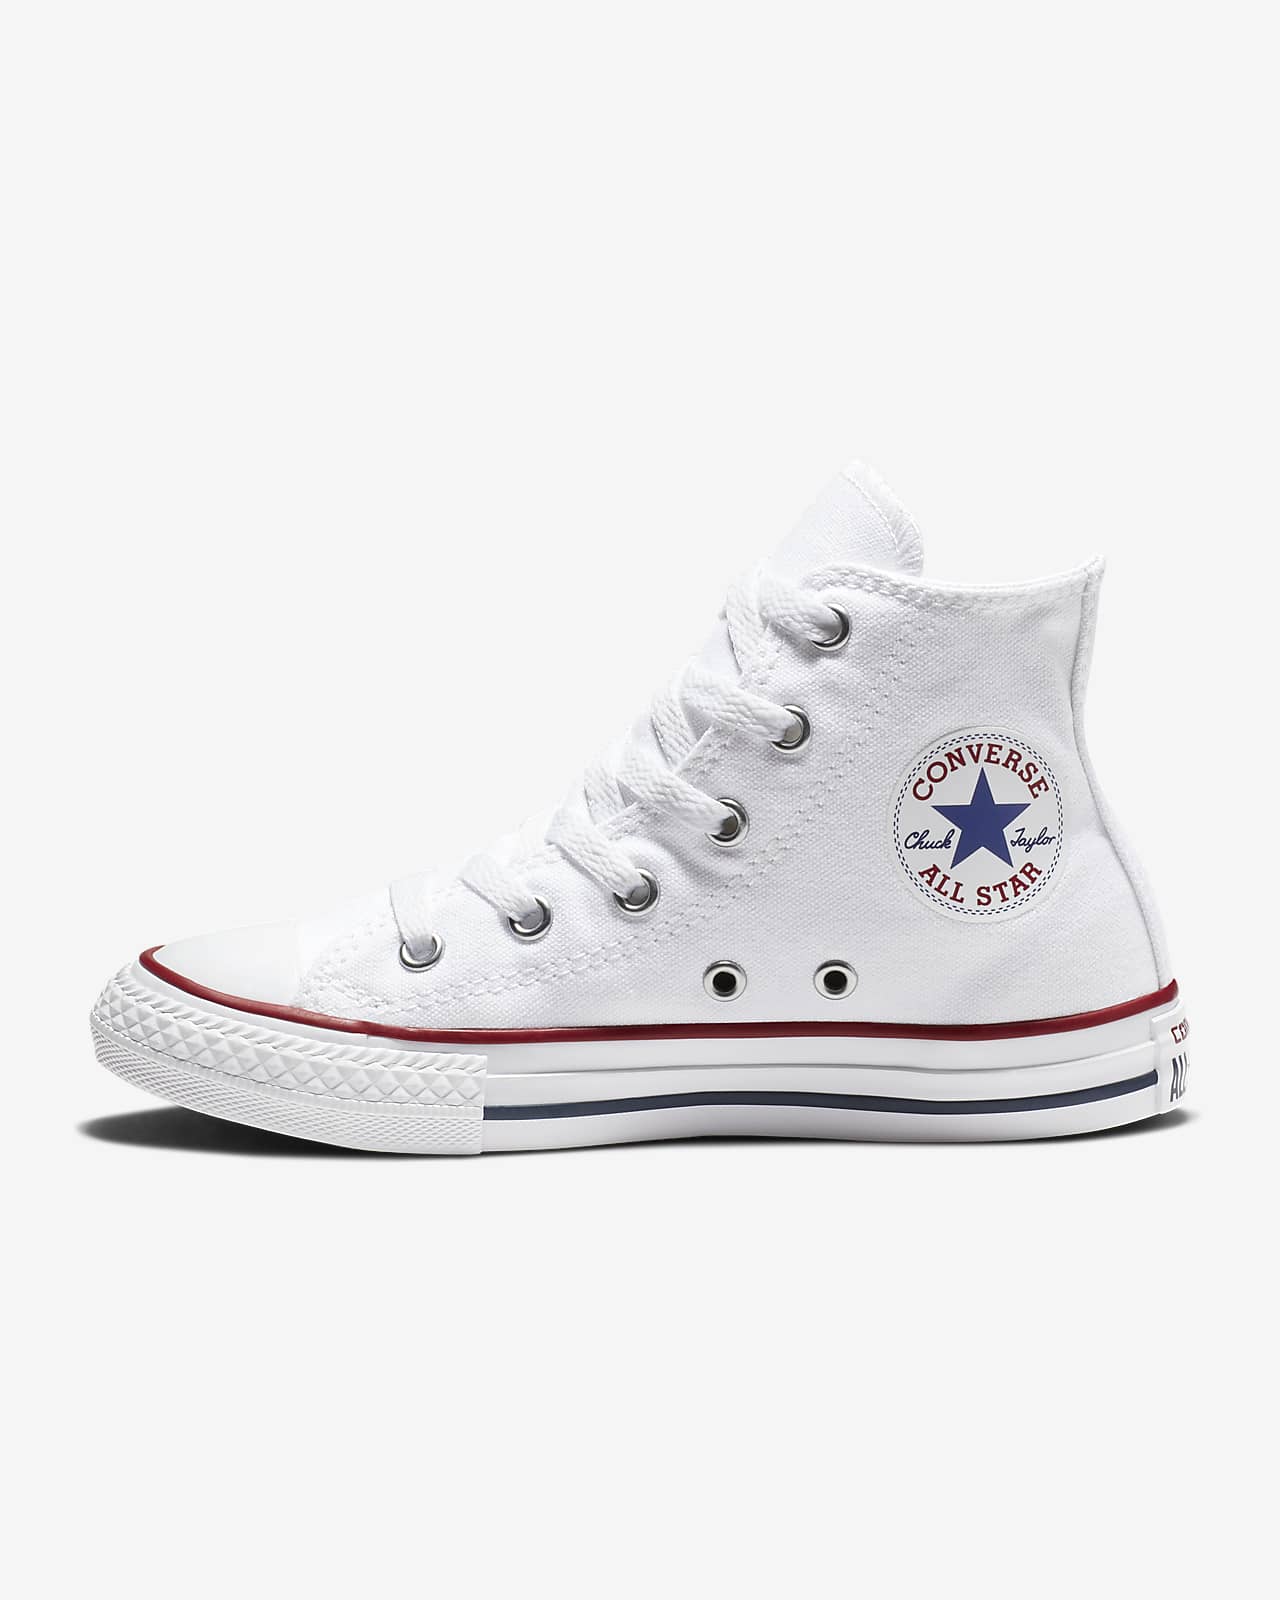 Converse Chuck Taylor All Star High Top Little Kids' Shoe 